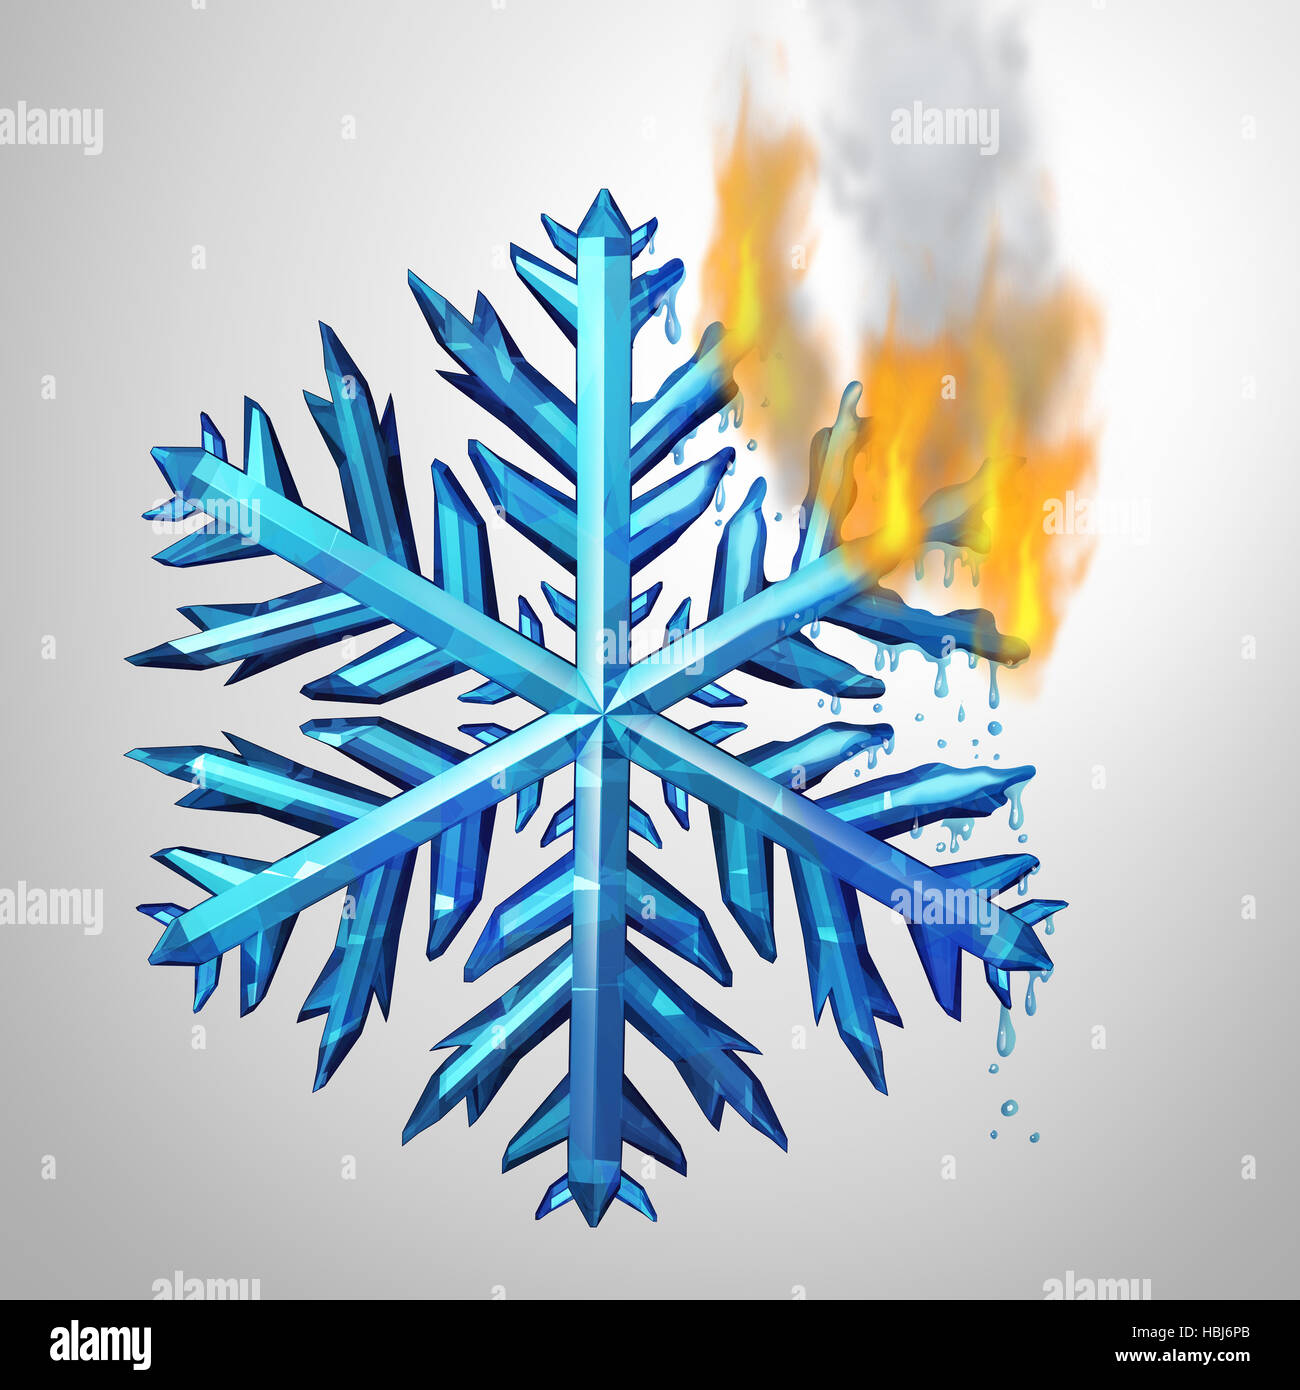 Klimakonzept ändern wie eine gefrorene Eis Kristall Schneeflocke schmelzen und verbrennen in Flammen als eine ökologische Metapher für wechselnde Wetter Temeratur Stockfoto